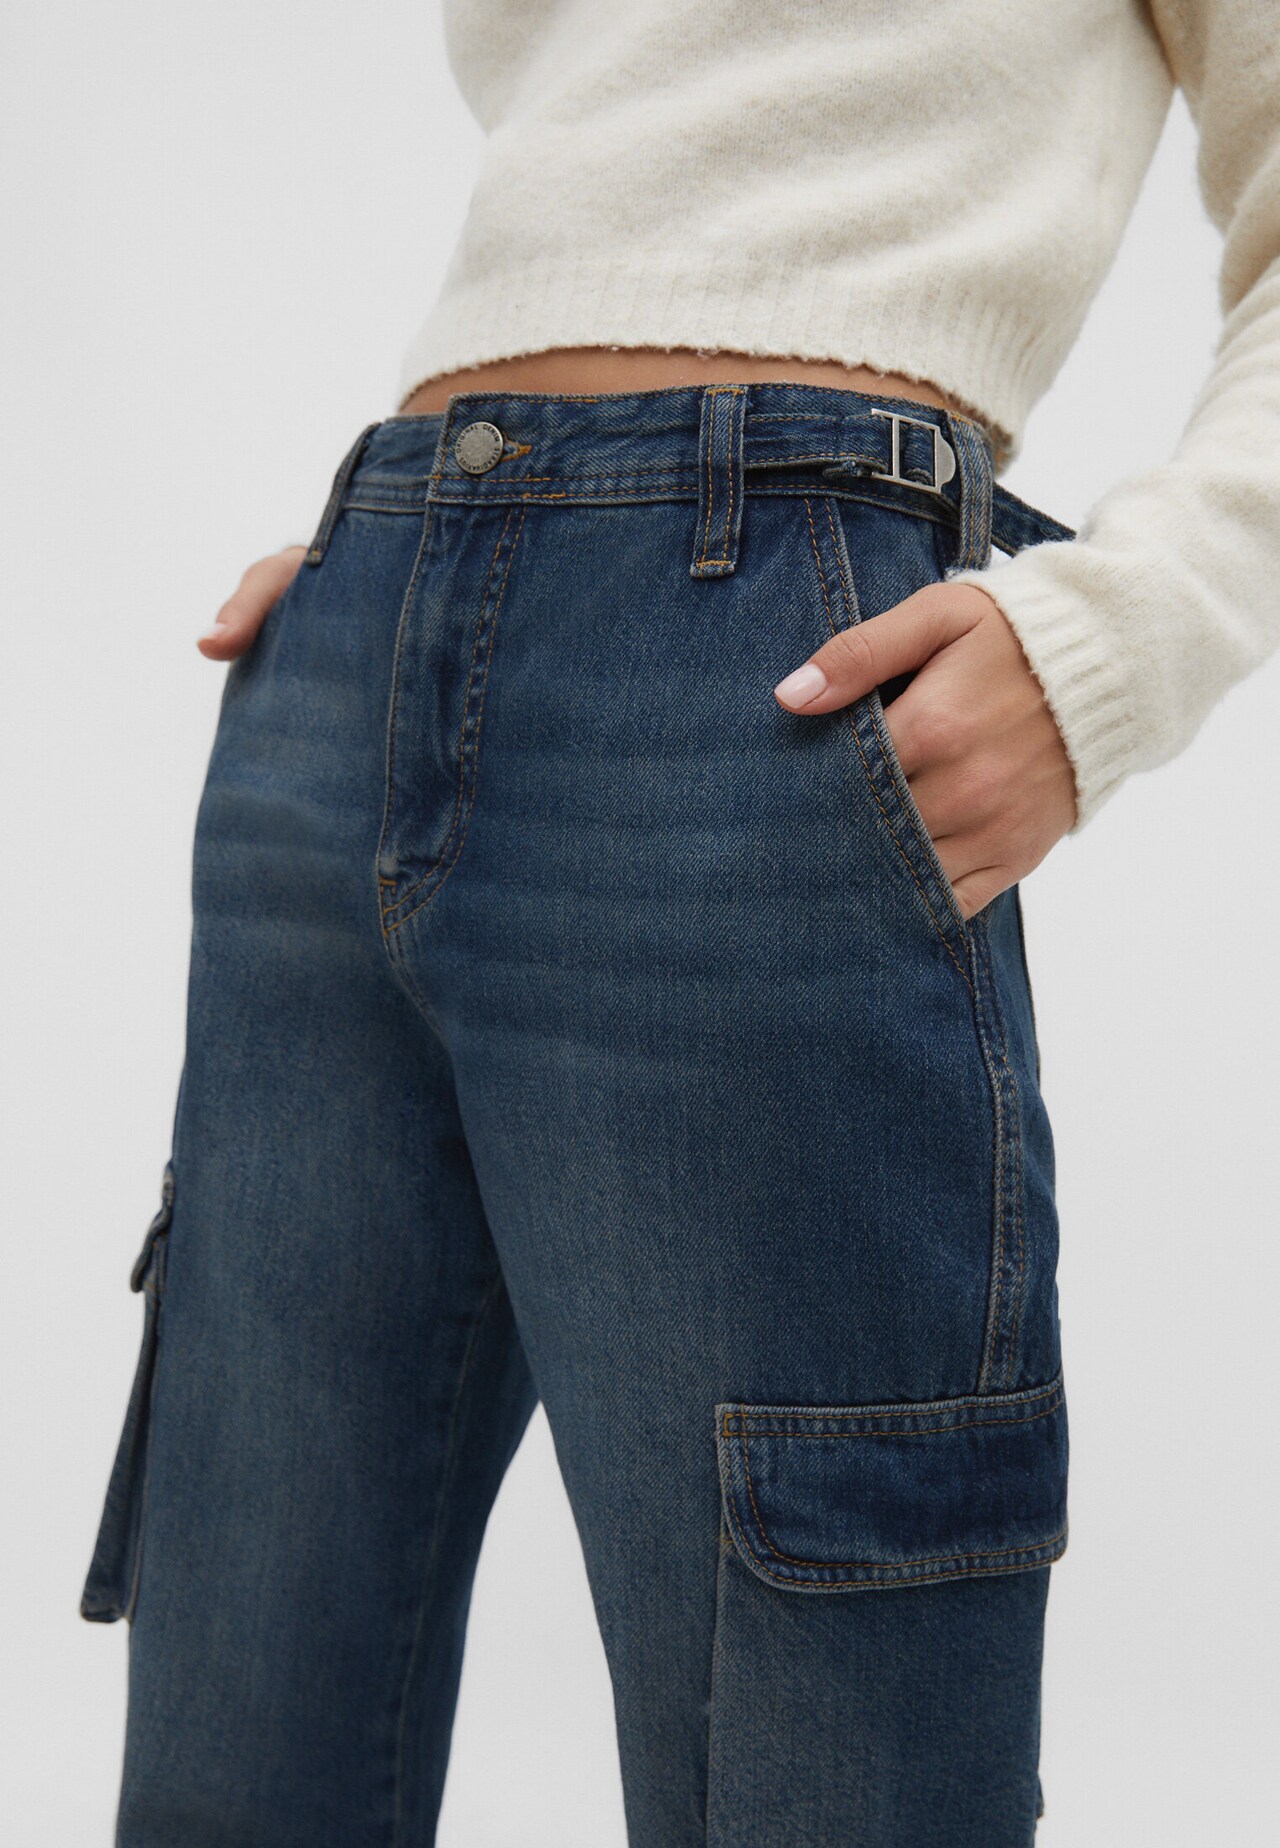 Pantalon cargo taille ajustable - null femme